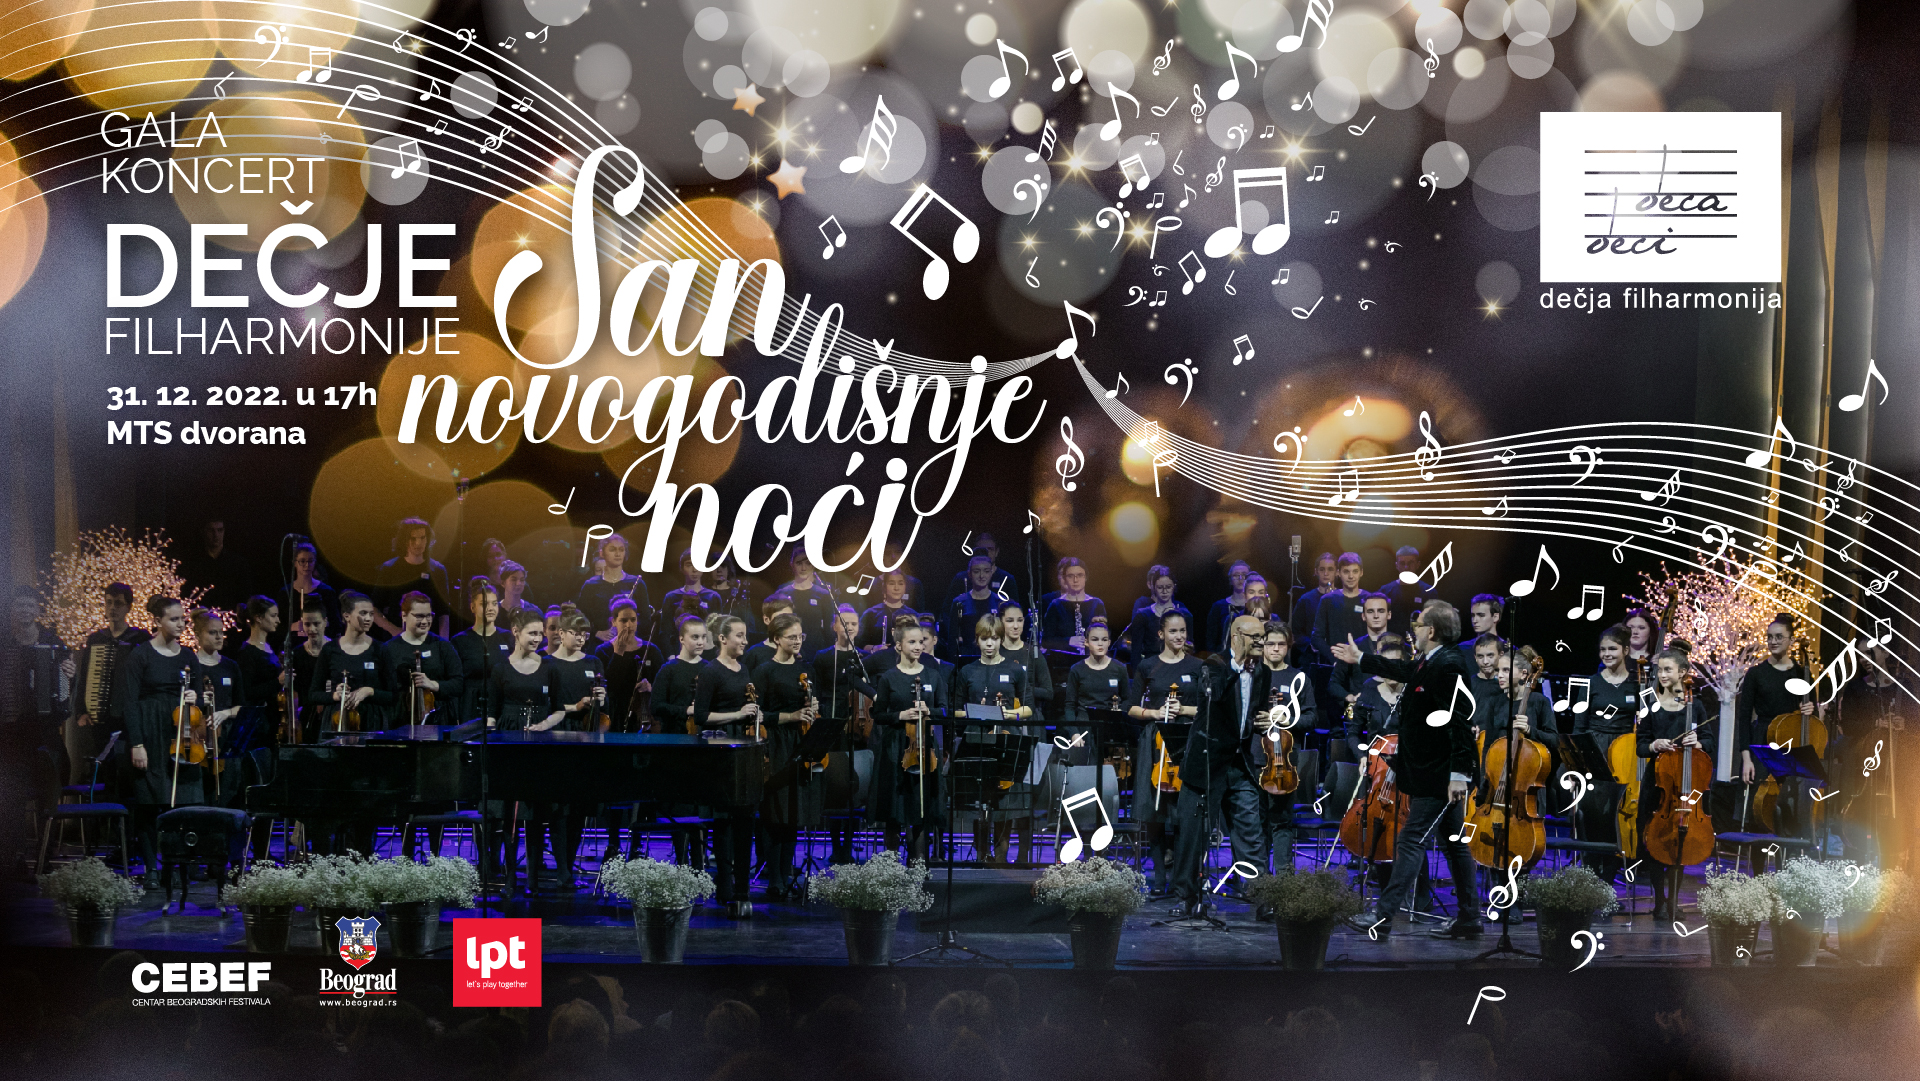 Gala koncert Dečje Filharmonije "San novogodišnje noći" 31.12.2022 MTS Dvorana